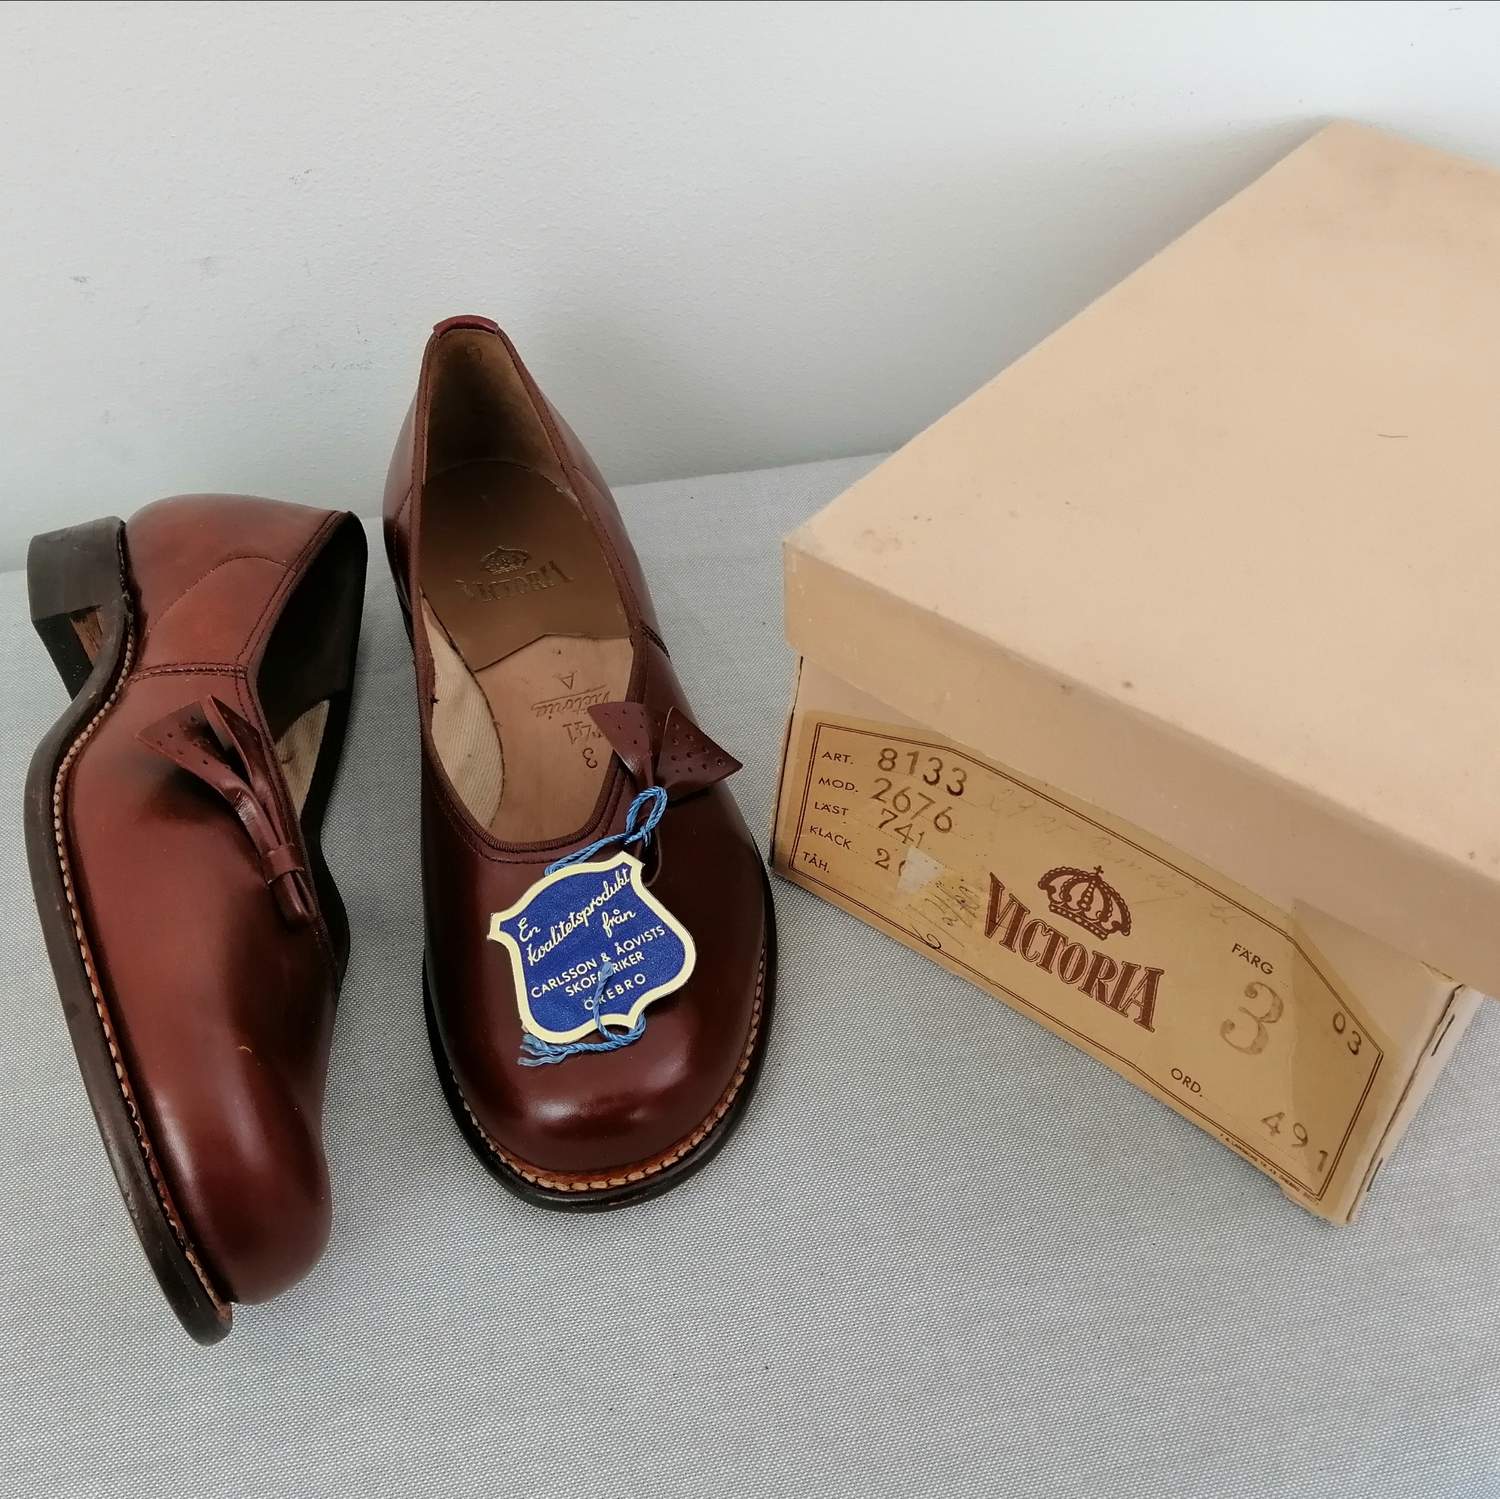 Vintage Victoria låg brun sko rosett sidan stl 3A ca 35